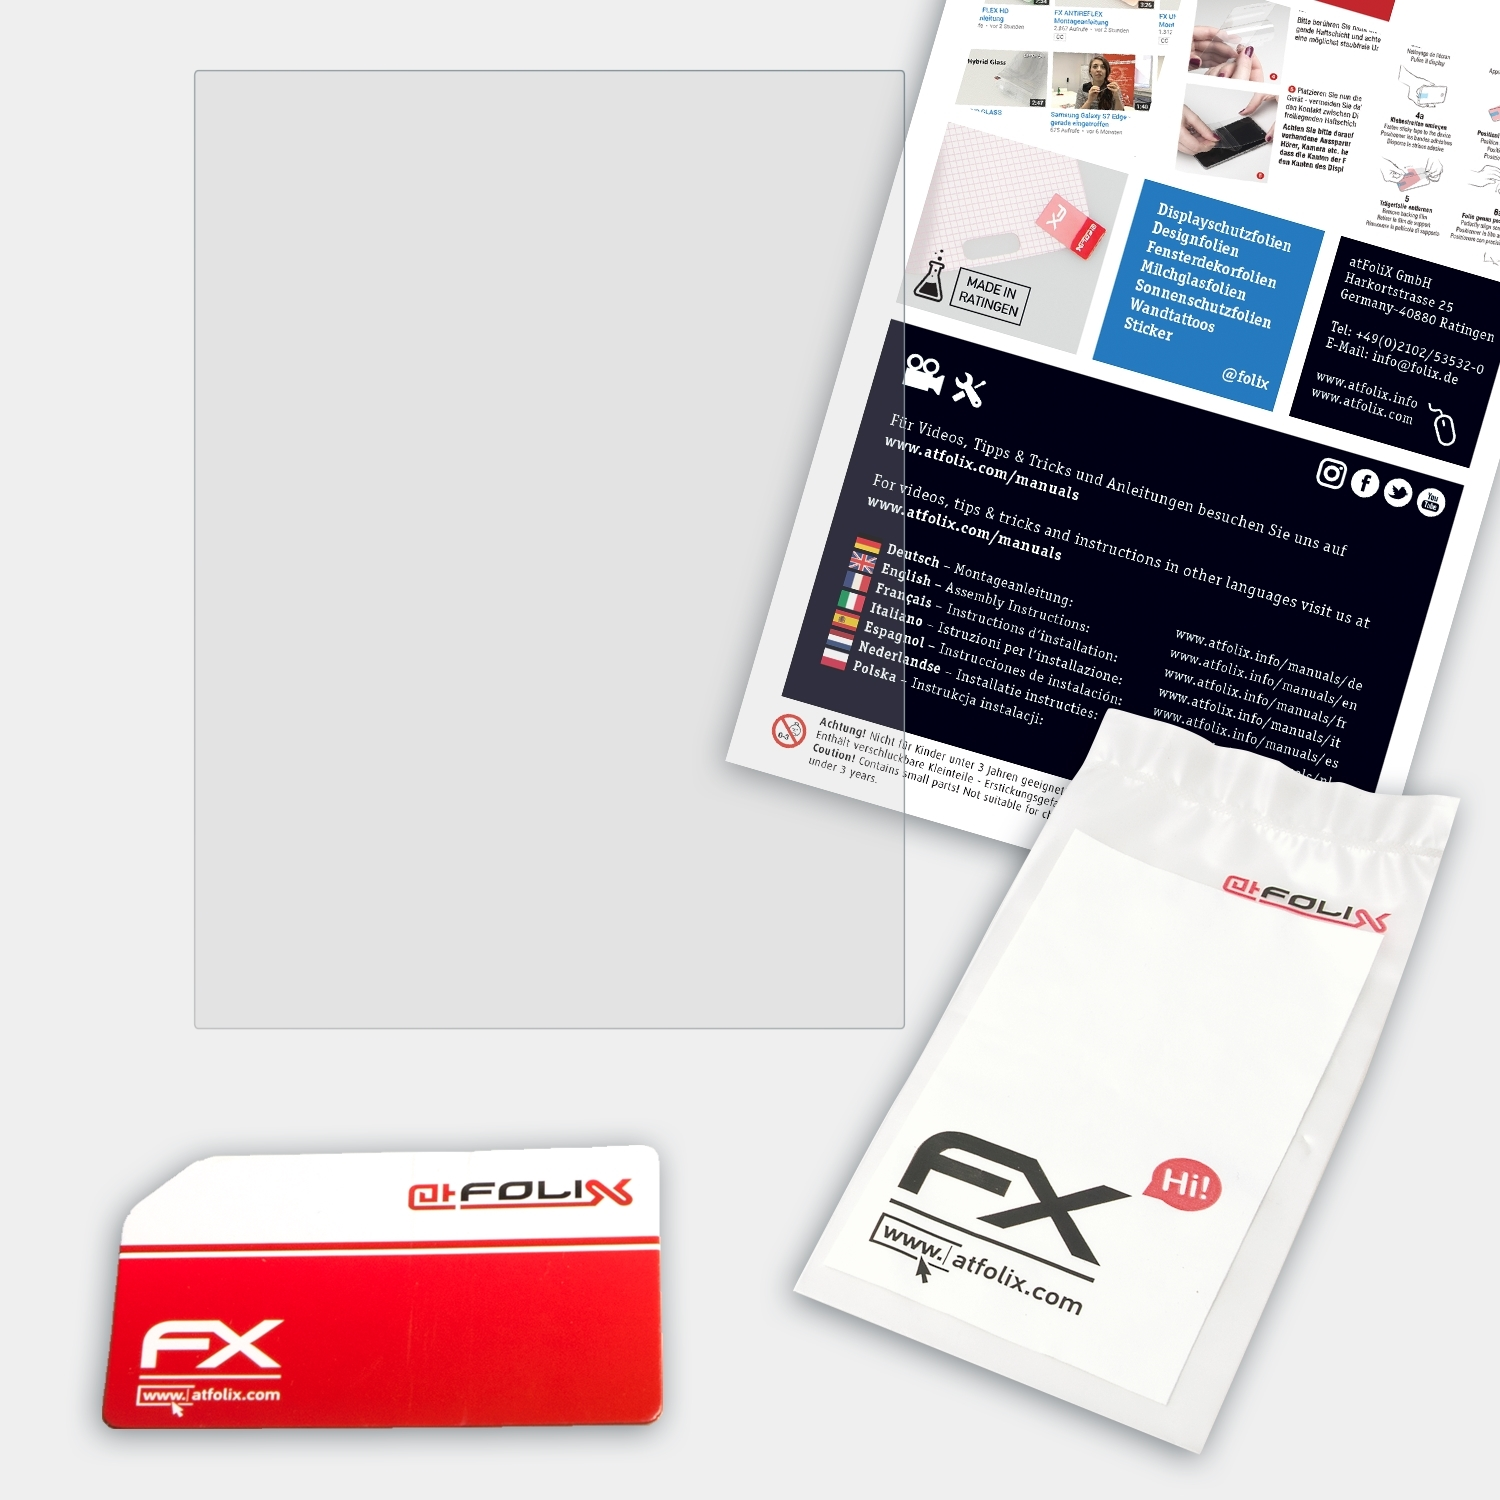 PRS-600 Sony FX-Hybrid-Glass Schutzglas(für Touch ATFOLIX Reader Edition)